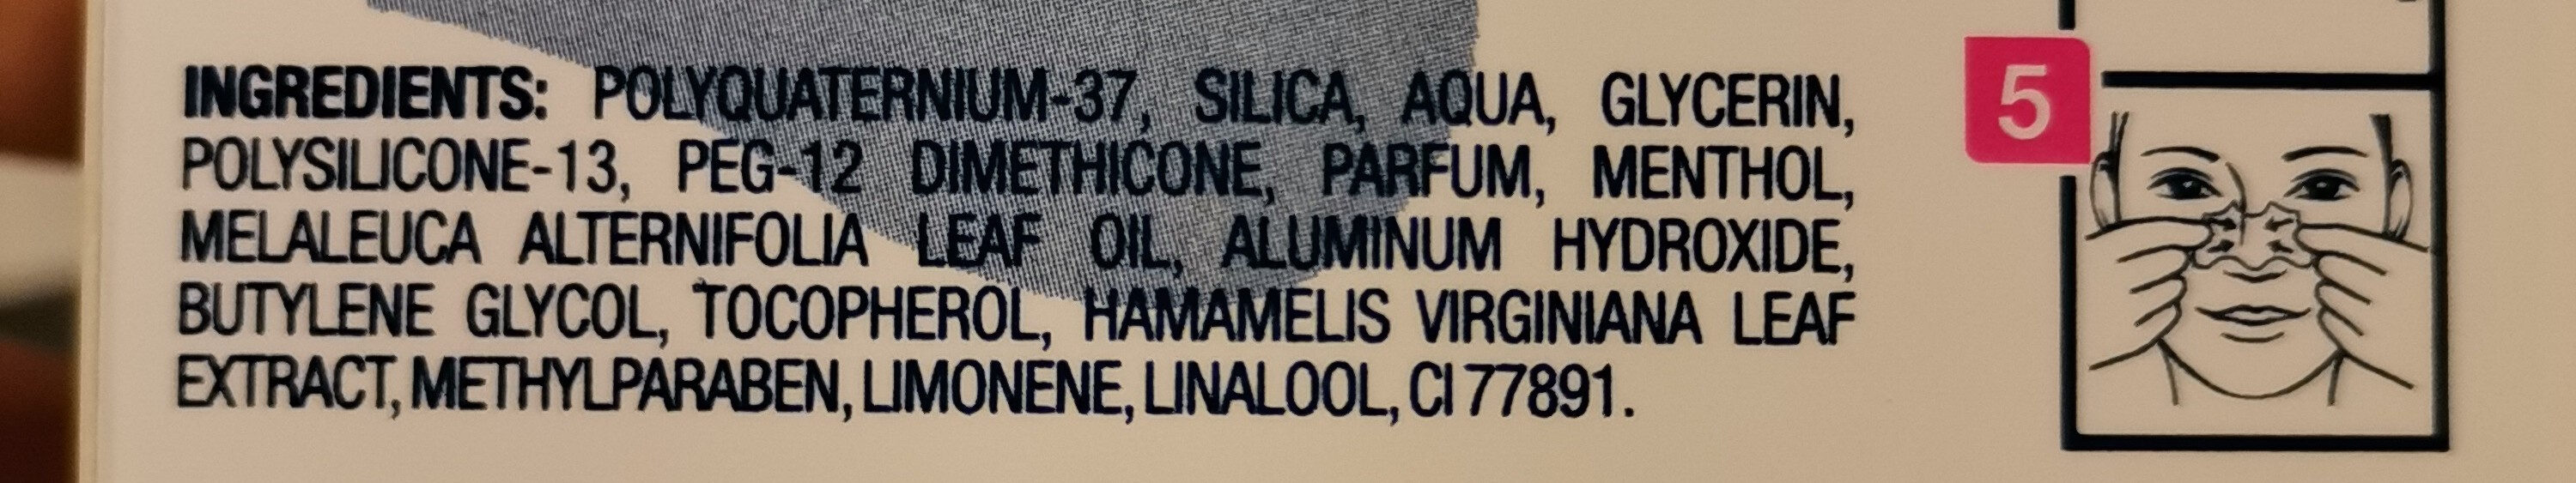 Patches ultra purifiant à l'hamamélis - Ingredients - fr